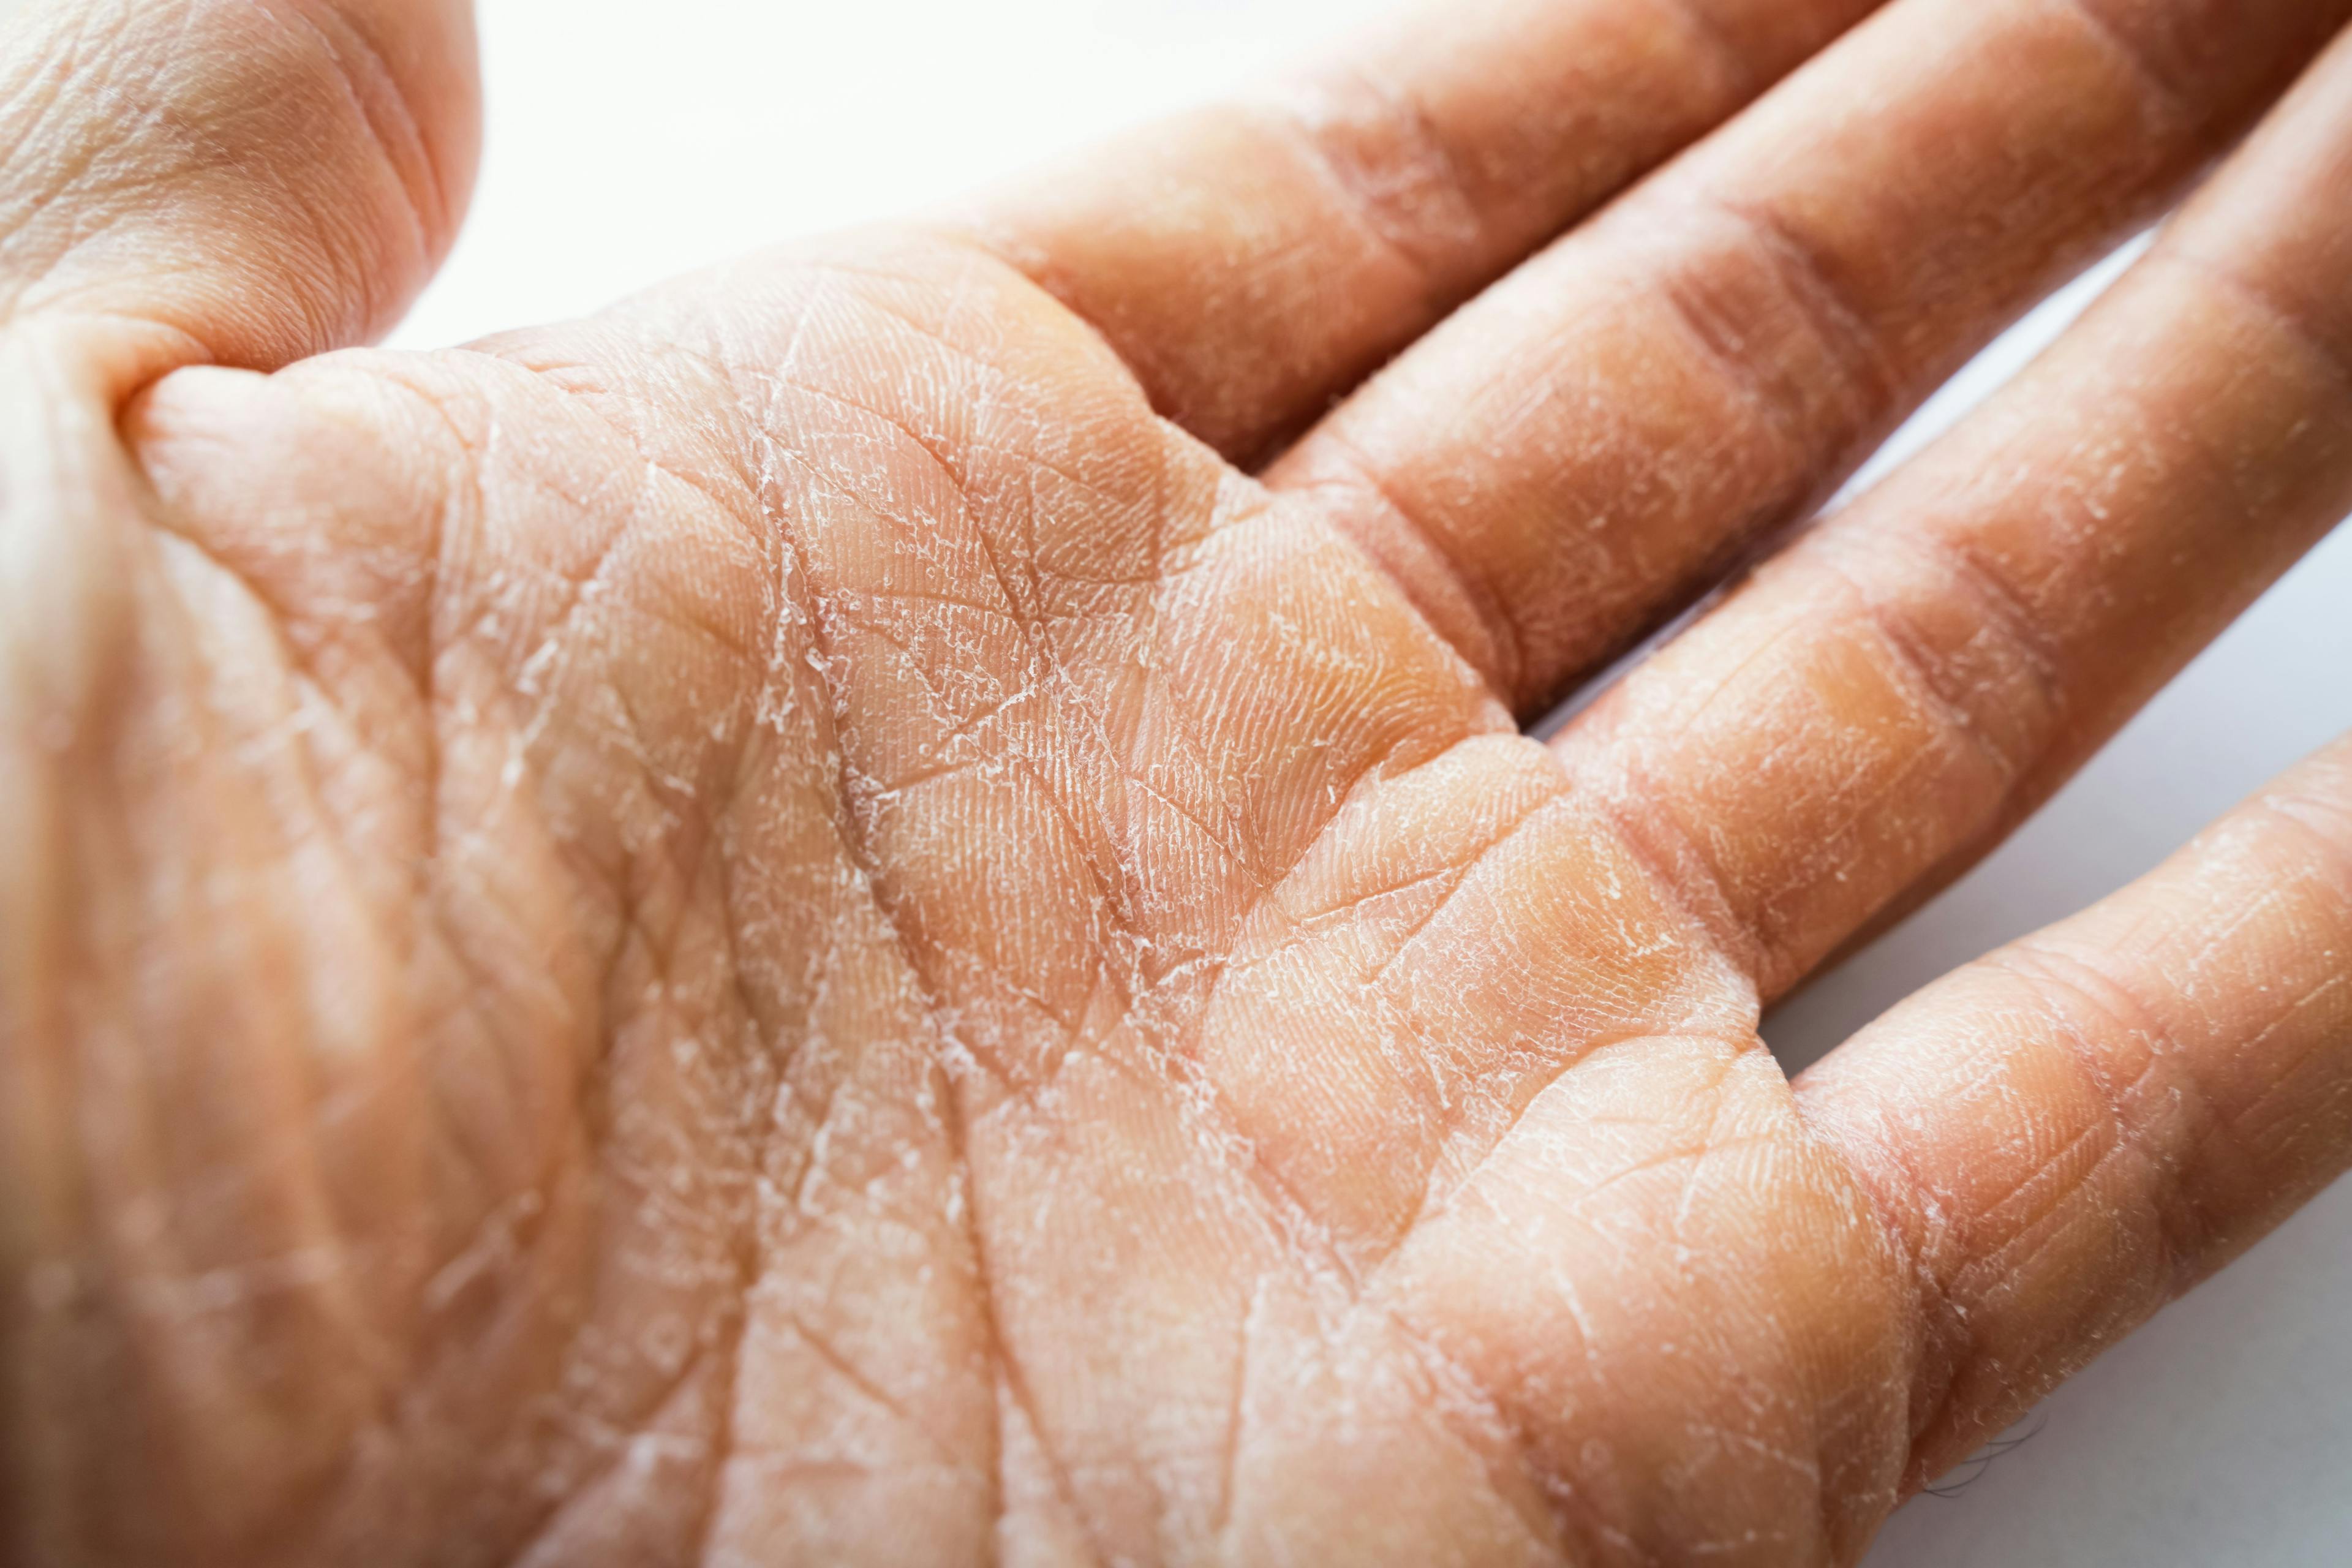 GlobalSkin’s GRIDD Study Seeks to Evaluate Global Impact of Skin Diseases